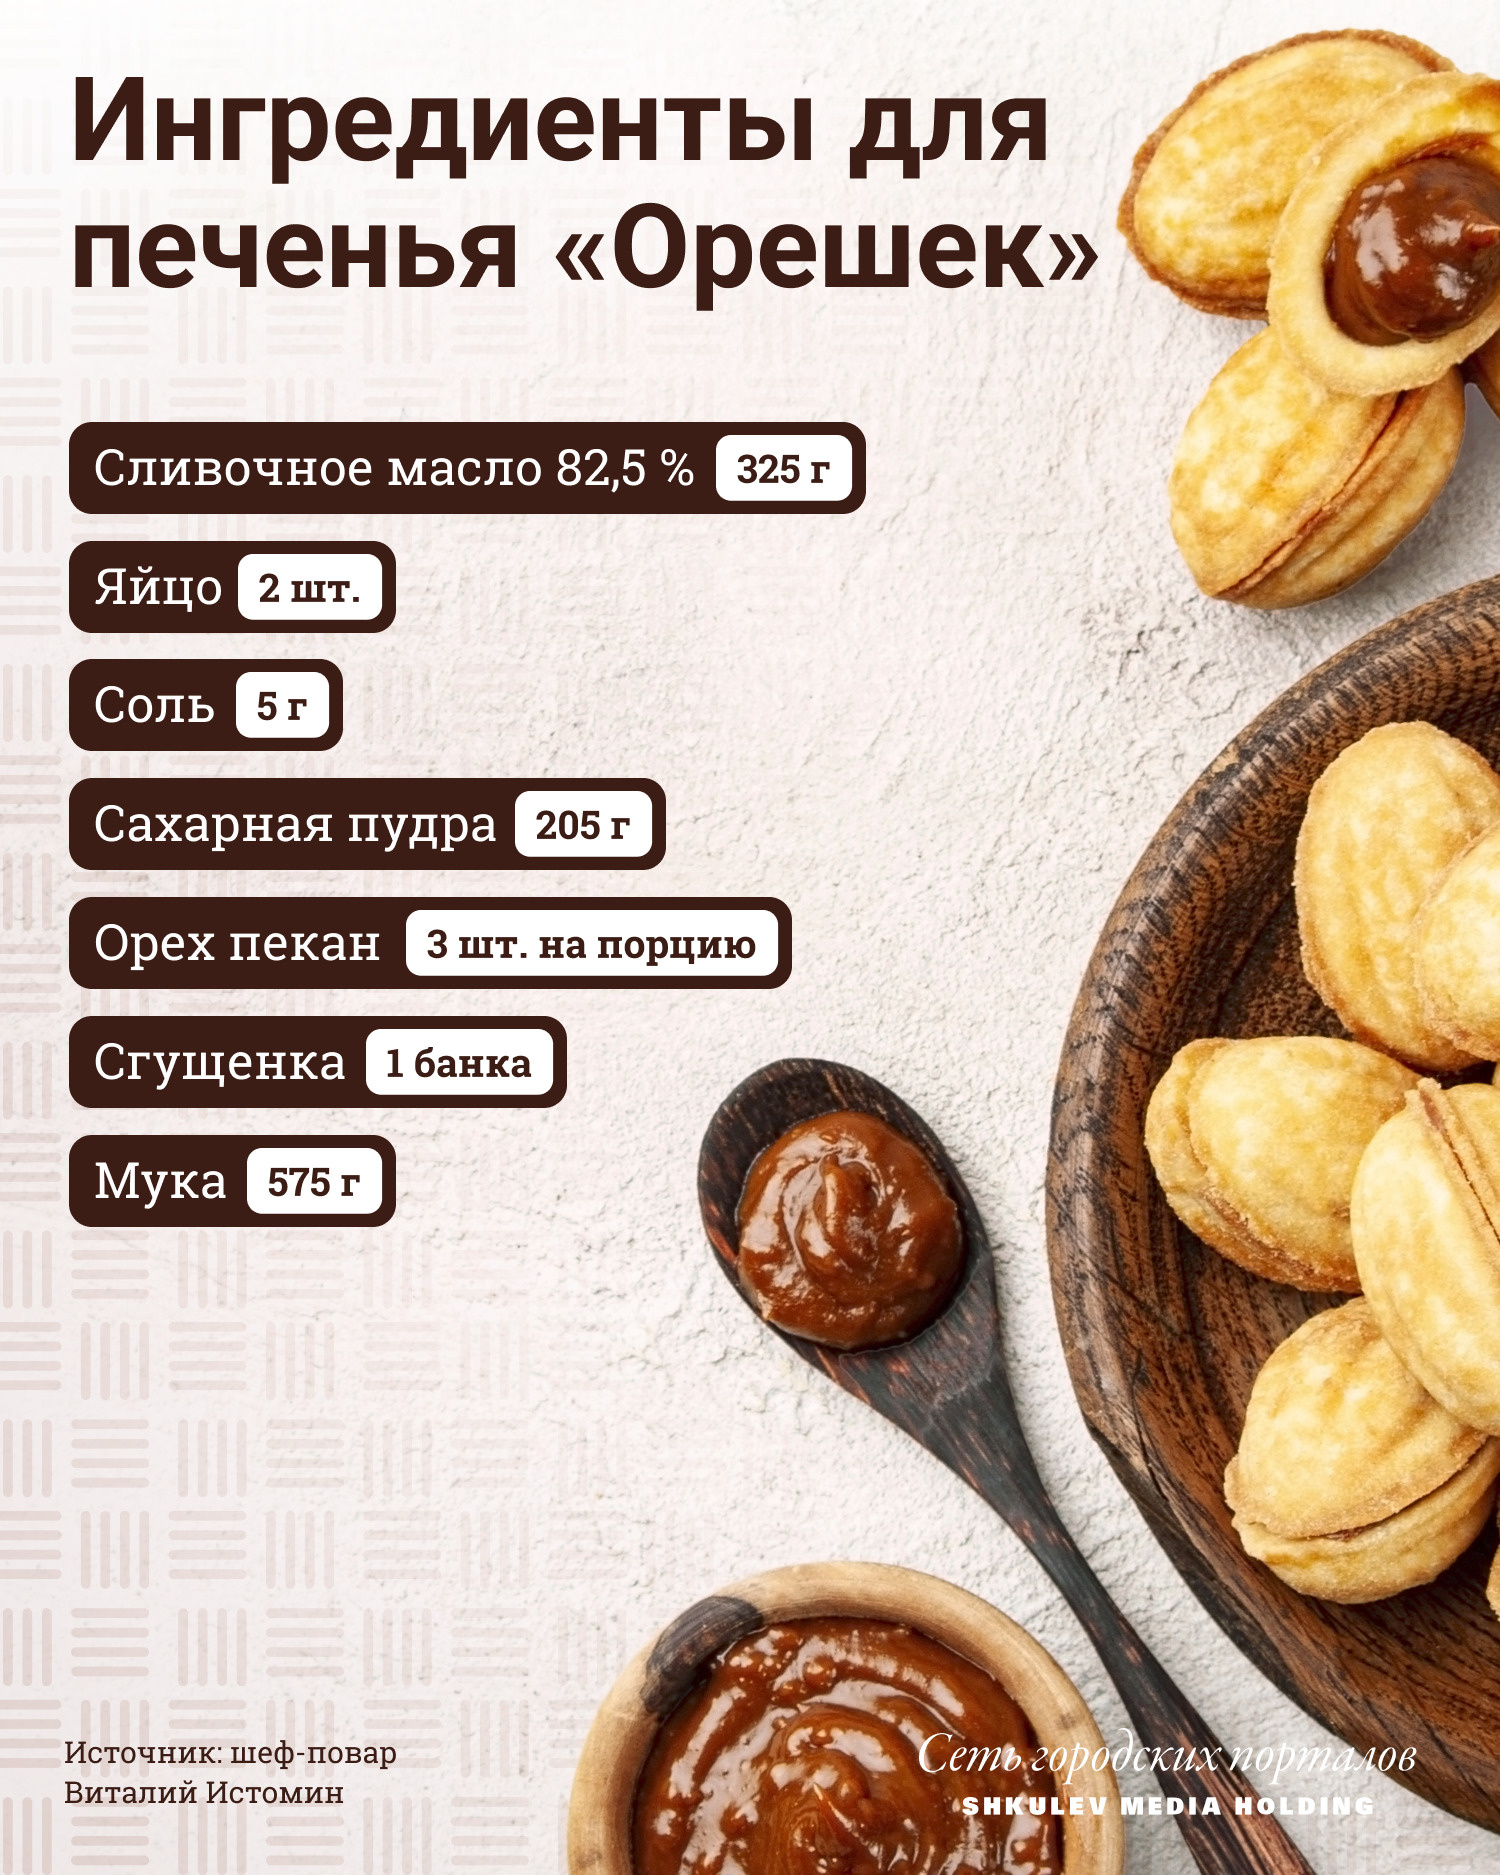 Ингредиенты для ваших «Орешков»